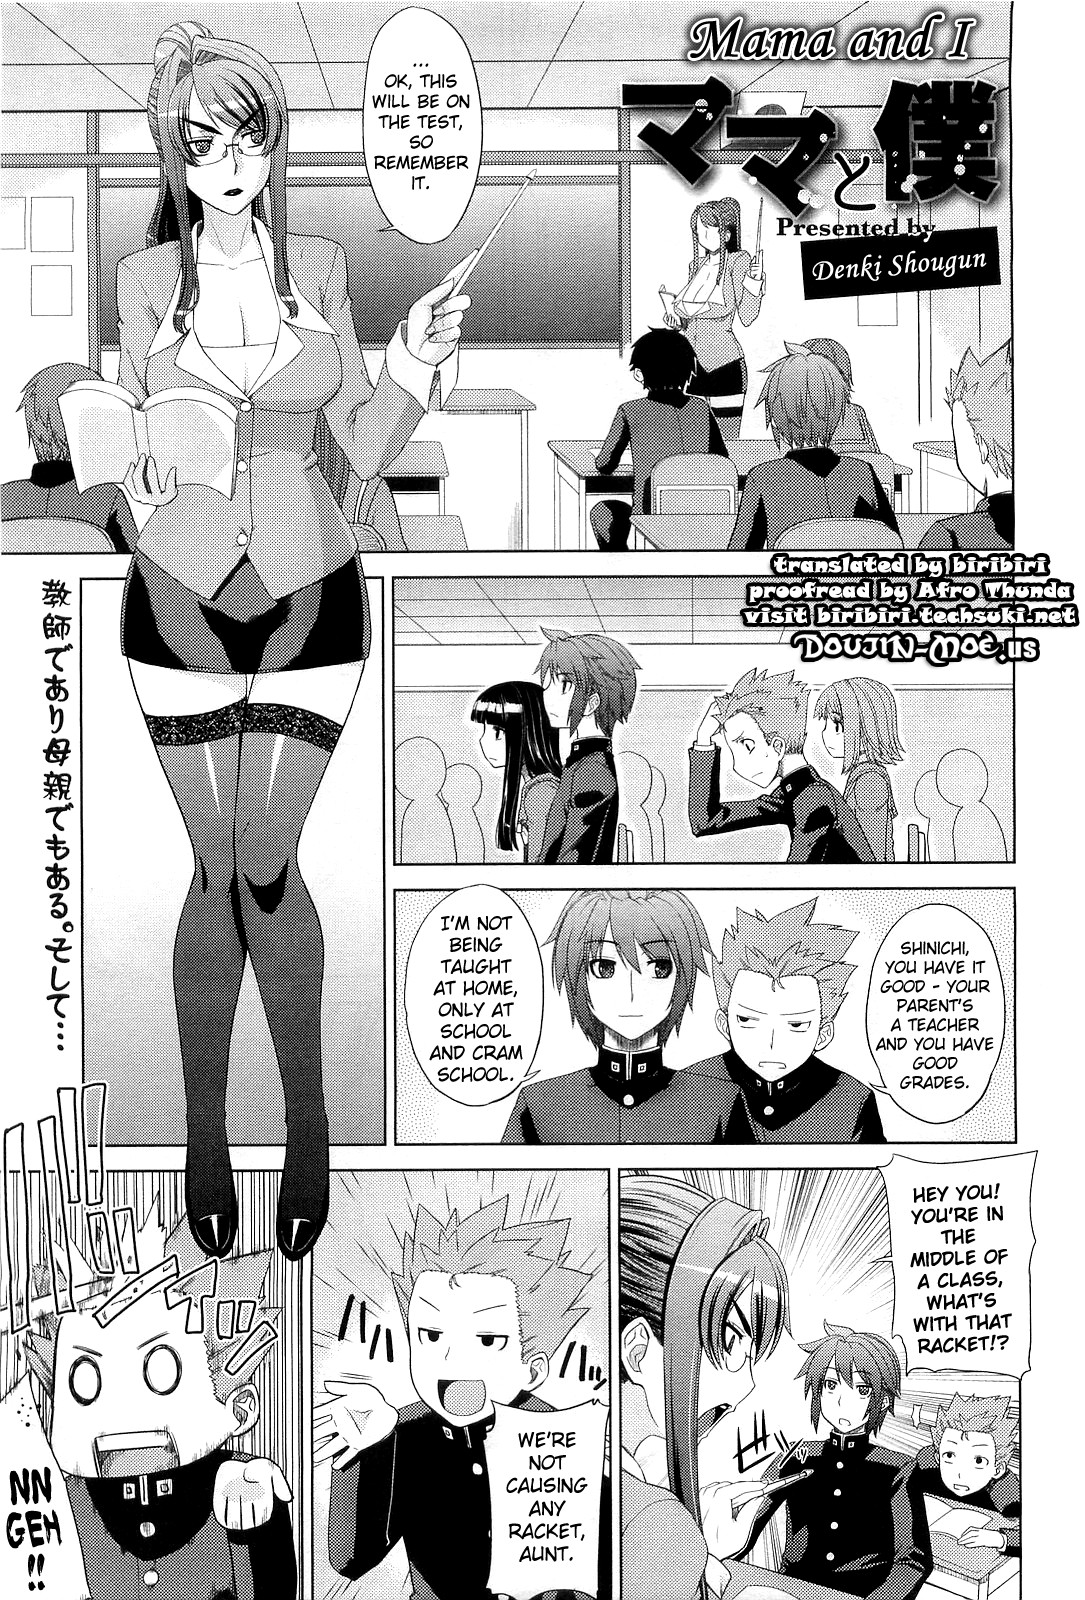 Denki Shougun - Mama and I (English) Hentai Comic